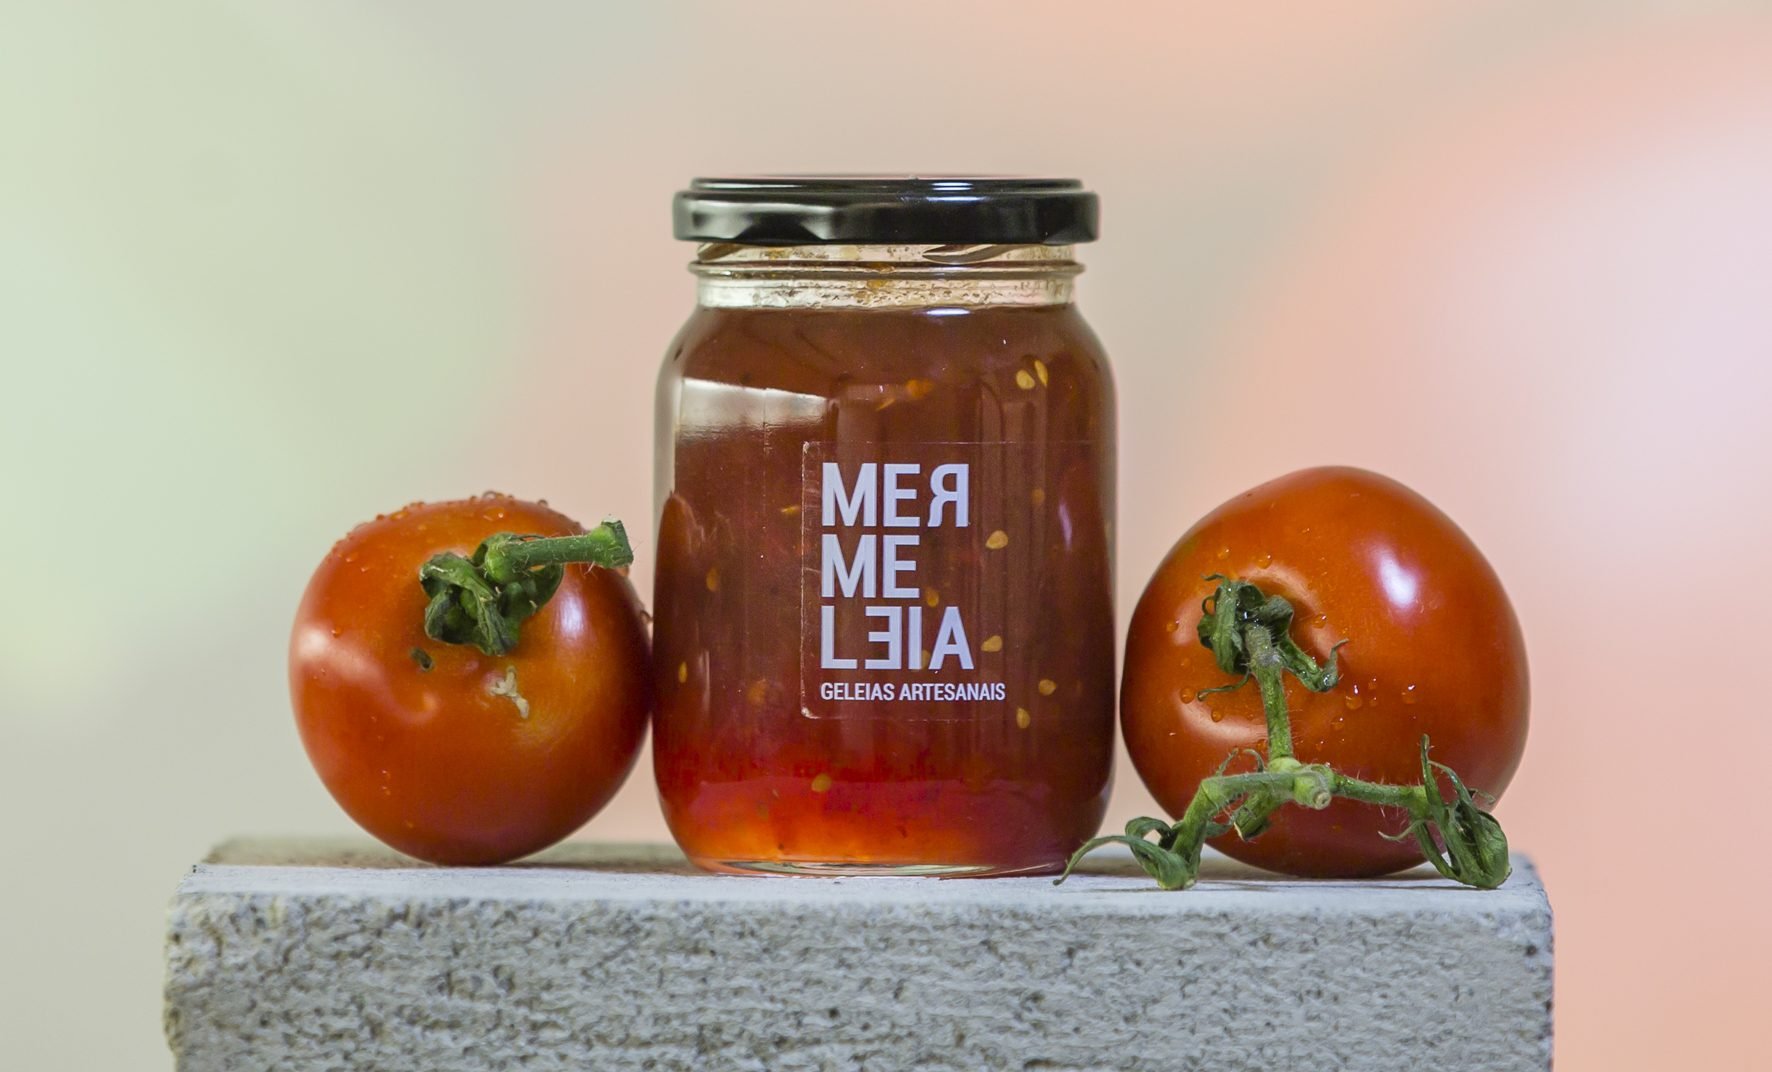 Geleia da Mermeleia sabor tomate com marken